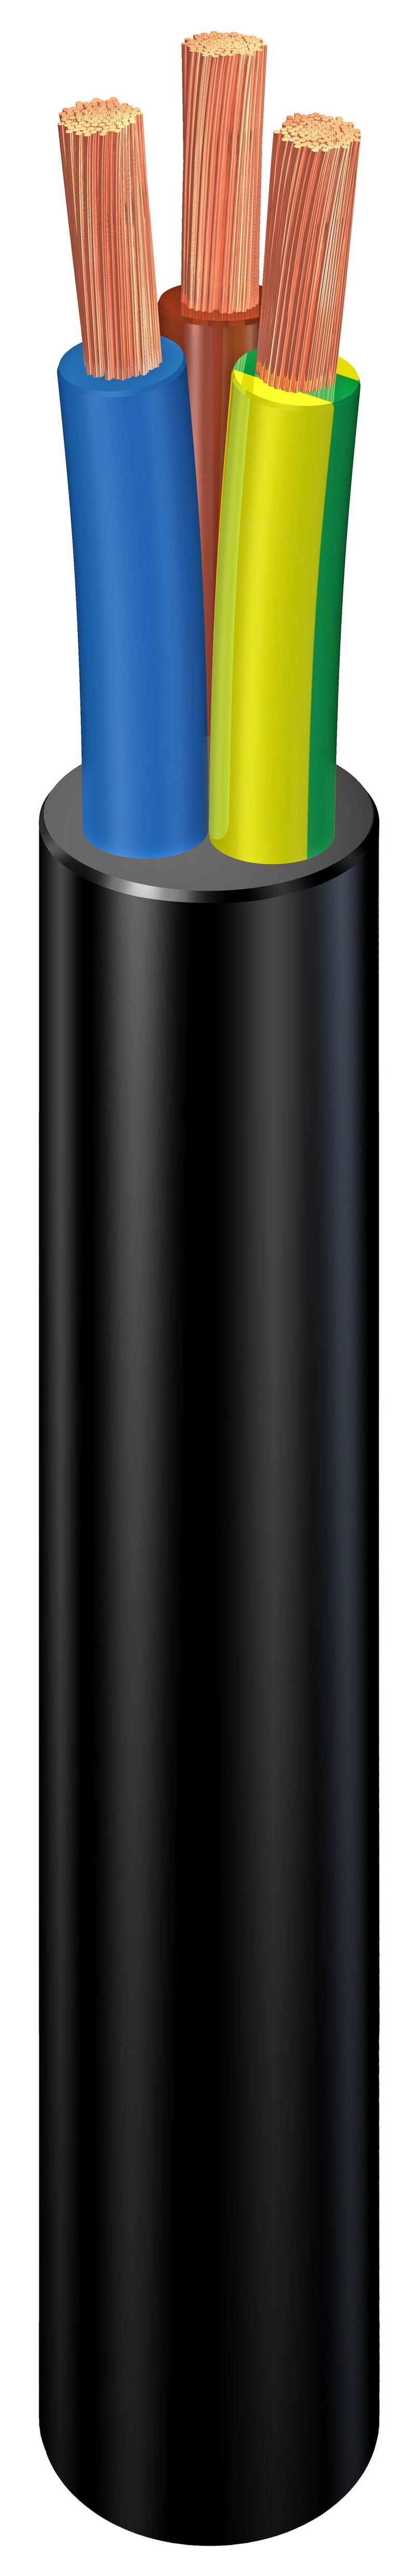 Cable eléctrico rvk 3 hilos de 4 mm2, 100 m, color negro